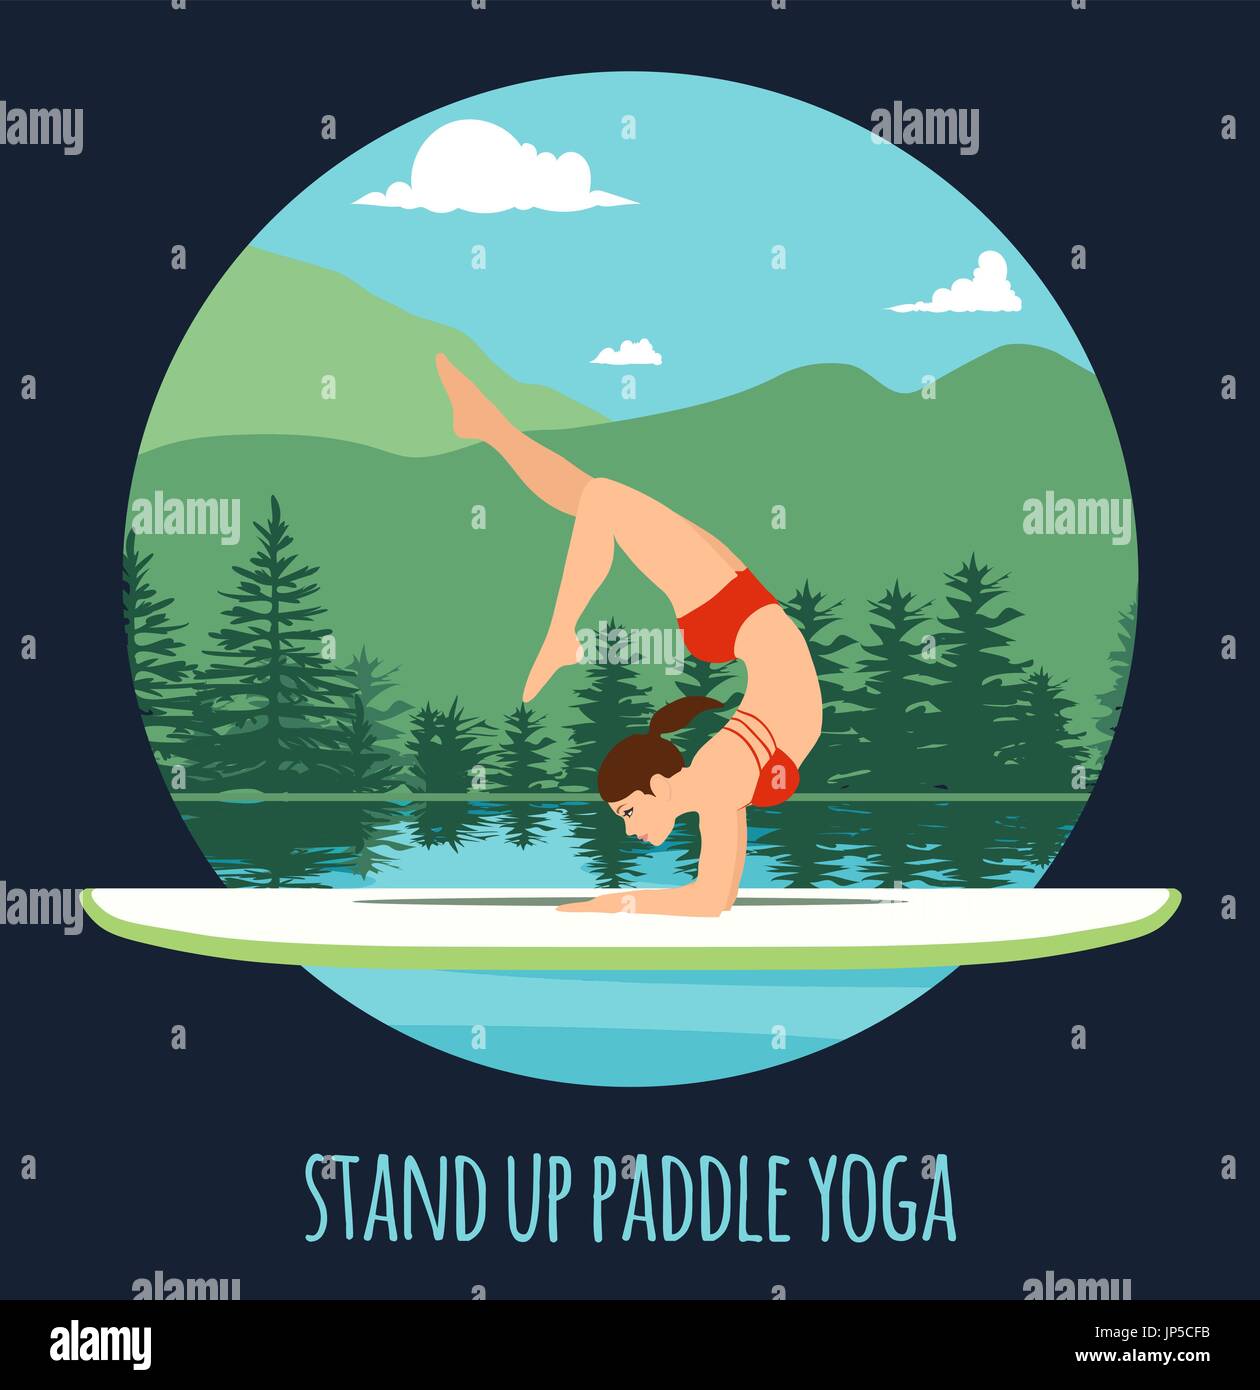 Frau am See Berglandschaft Stand Up Paddle Yoga Training Stand Up Paddling Yoga am Paddle Board auf dem Wasser zu tun Stock Vektor